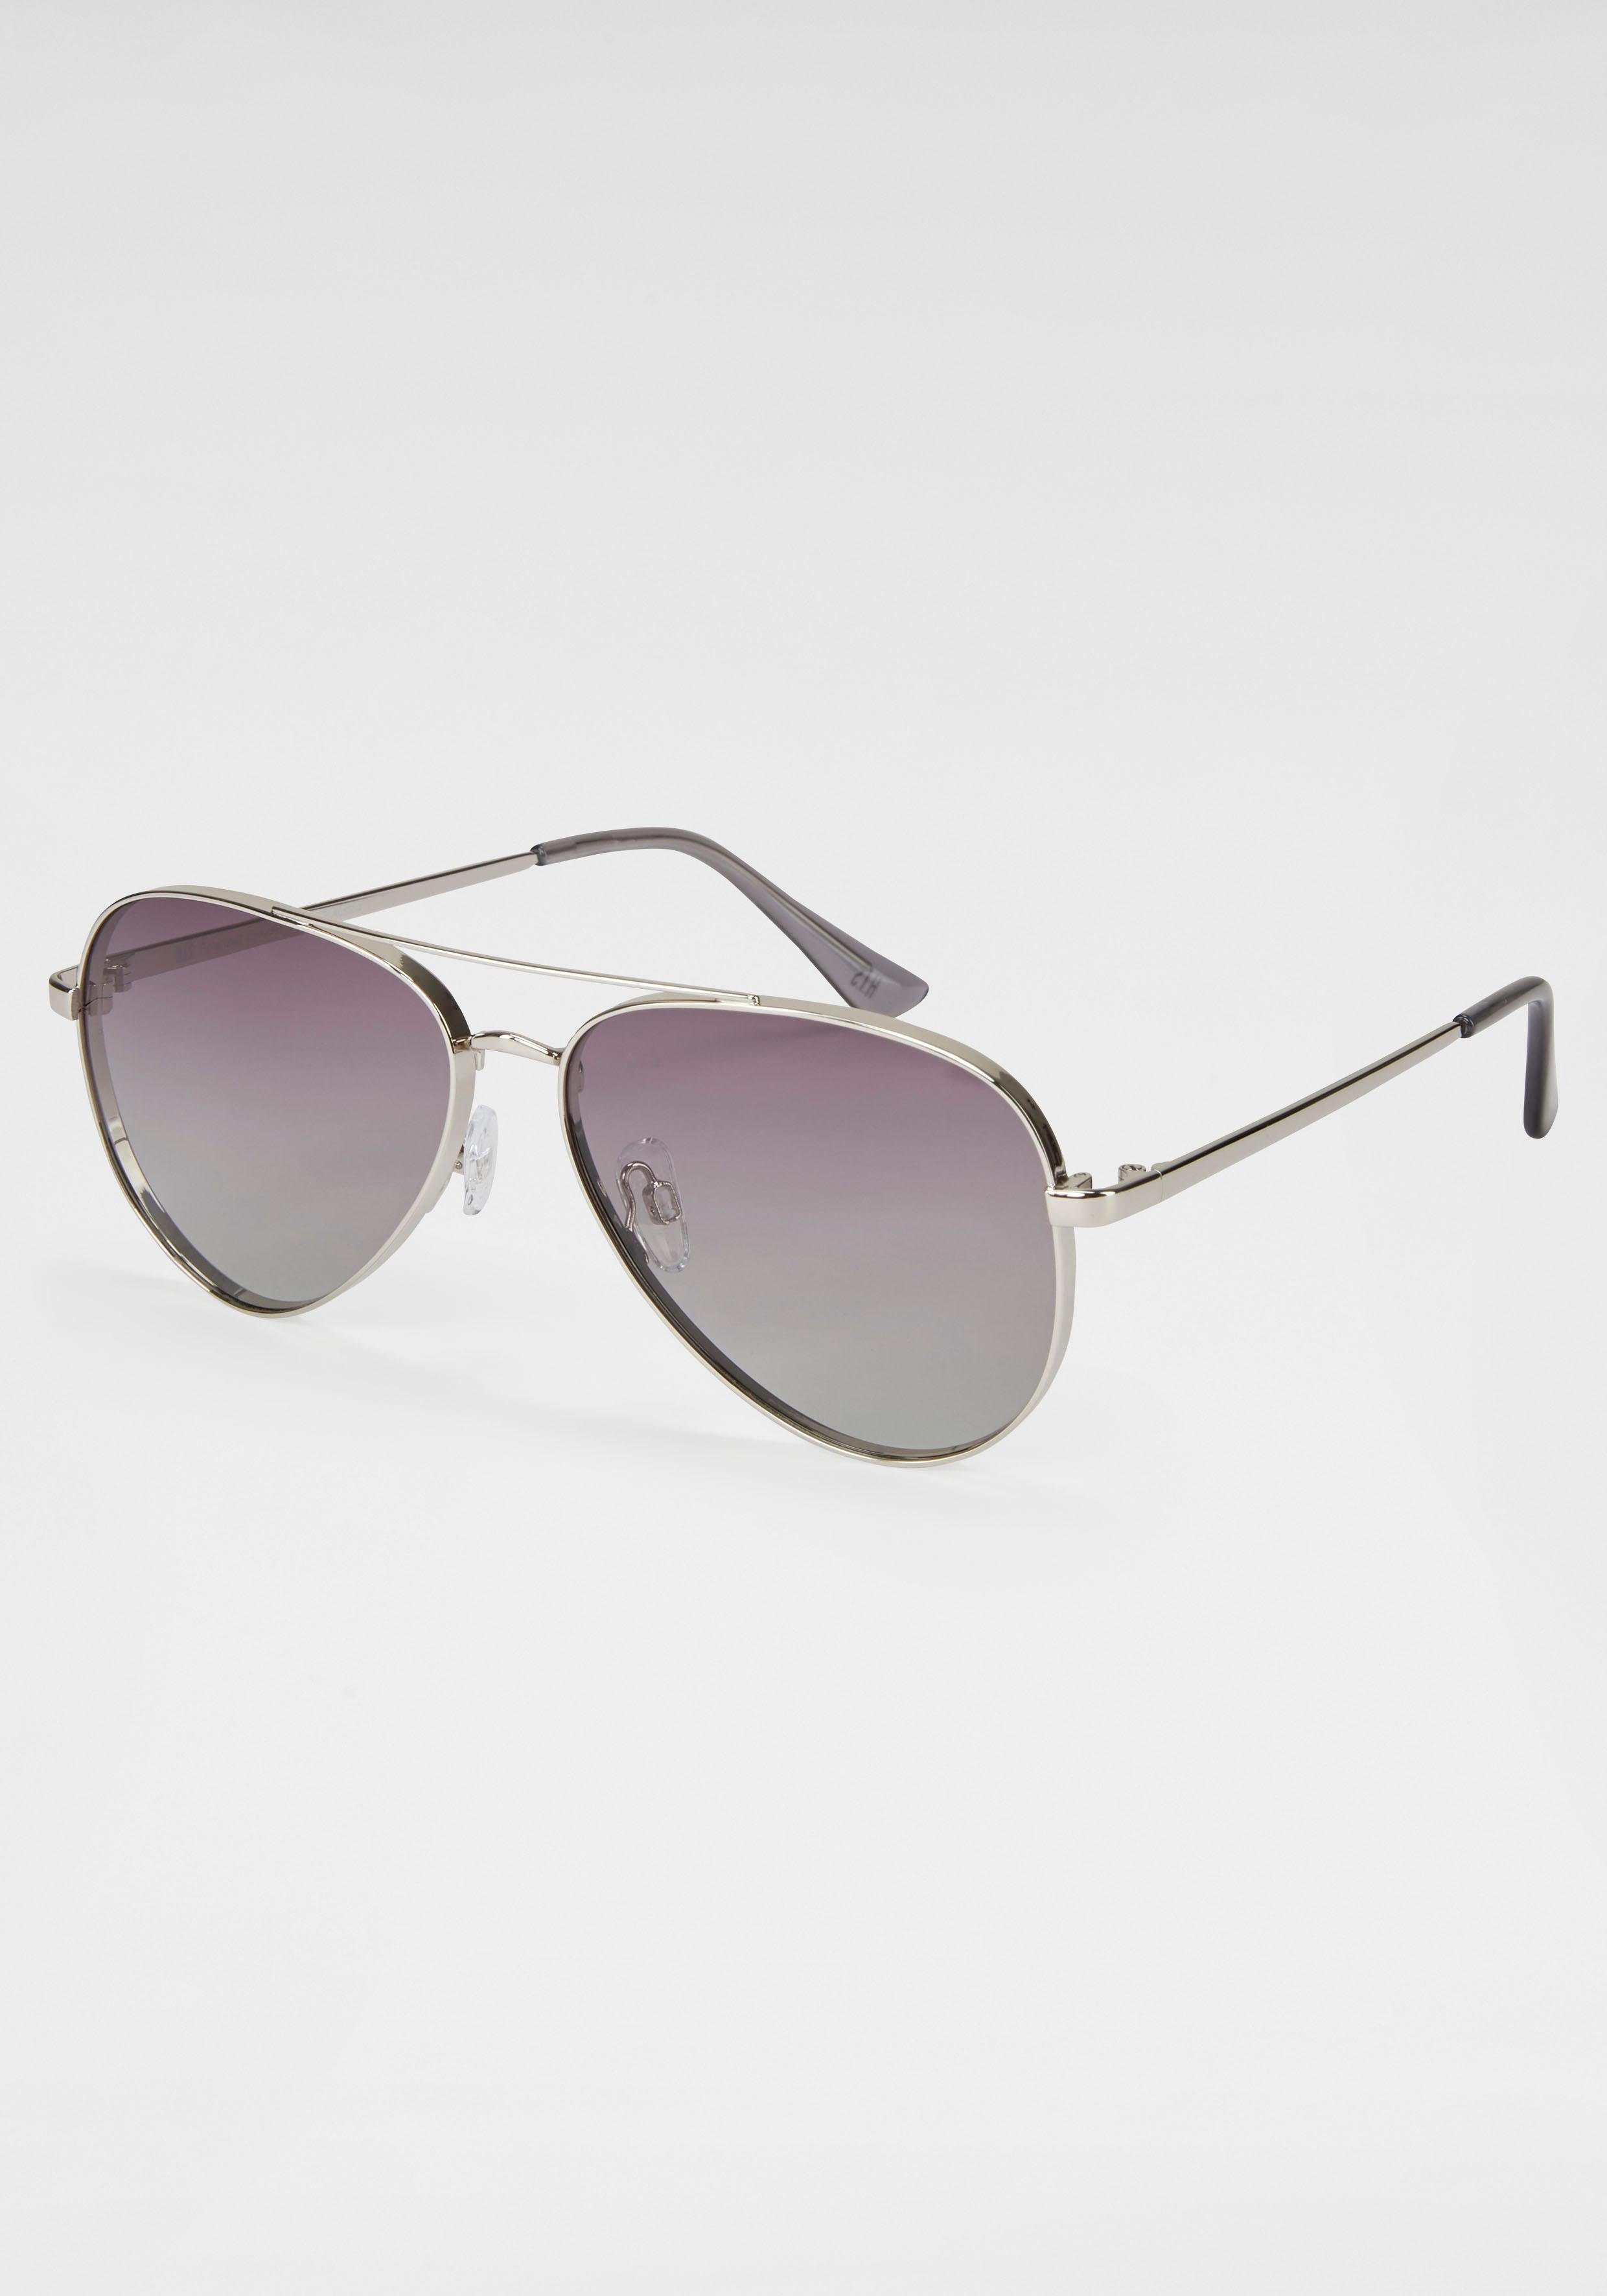 HIS Eyewear Sonnenbrille Pilot-Form, Logo auf dem Bügel online kaufen | OTTO